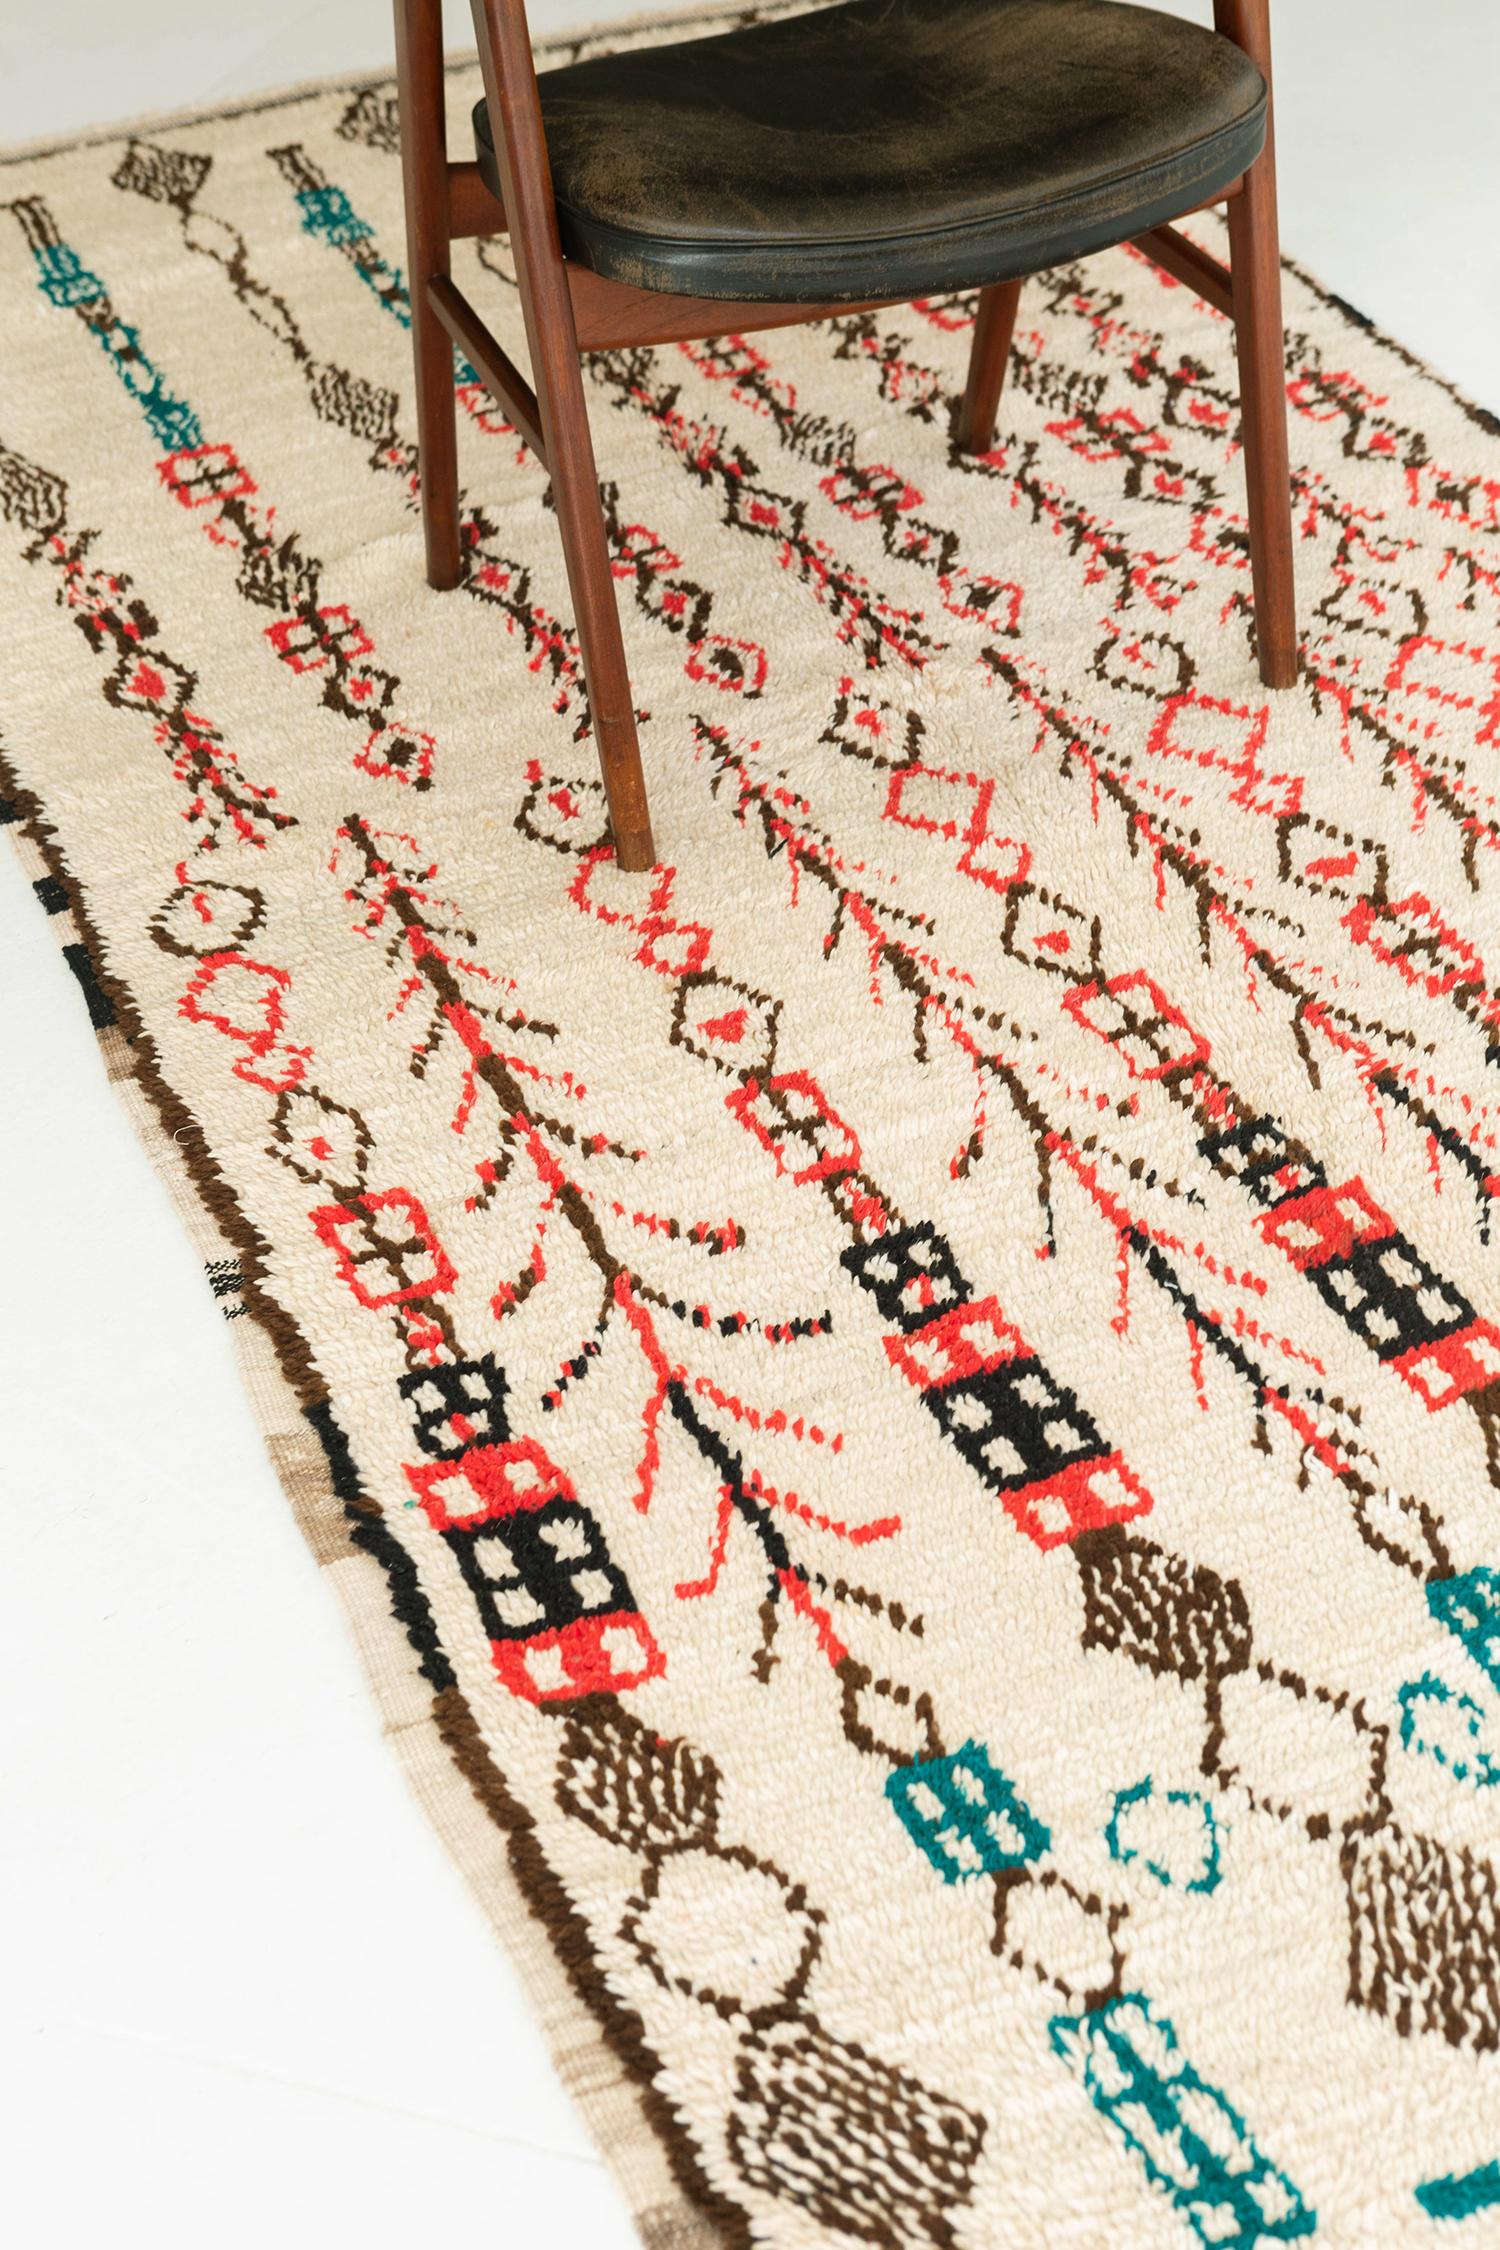 Ein exquisiter marokkanischer Berberteppich des Azilal-Stammes im Vintage-Stil mit sorgfältig verzierten, kunstvollen Elementen in den beruhigenden Farbtönen Braun, Lachs, Blaugrün und Elfenbein. Er zeigt einen prächtigen Tribal-Stil, der sich aus